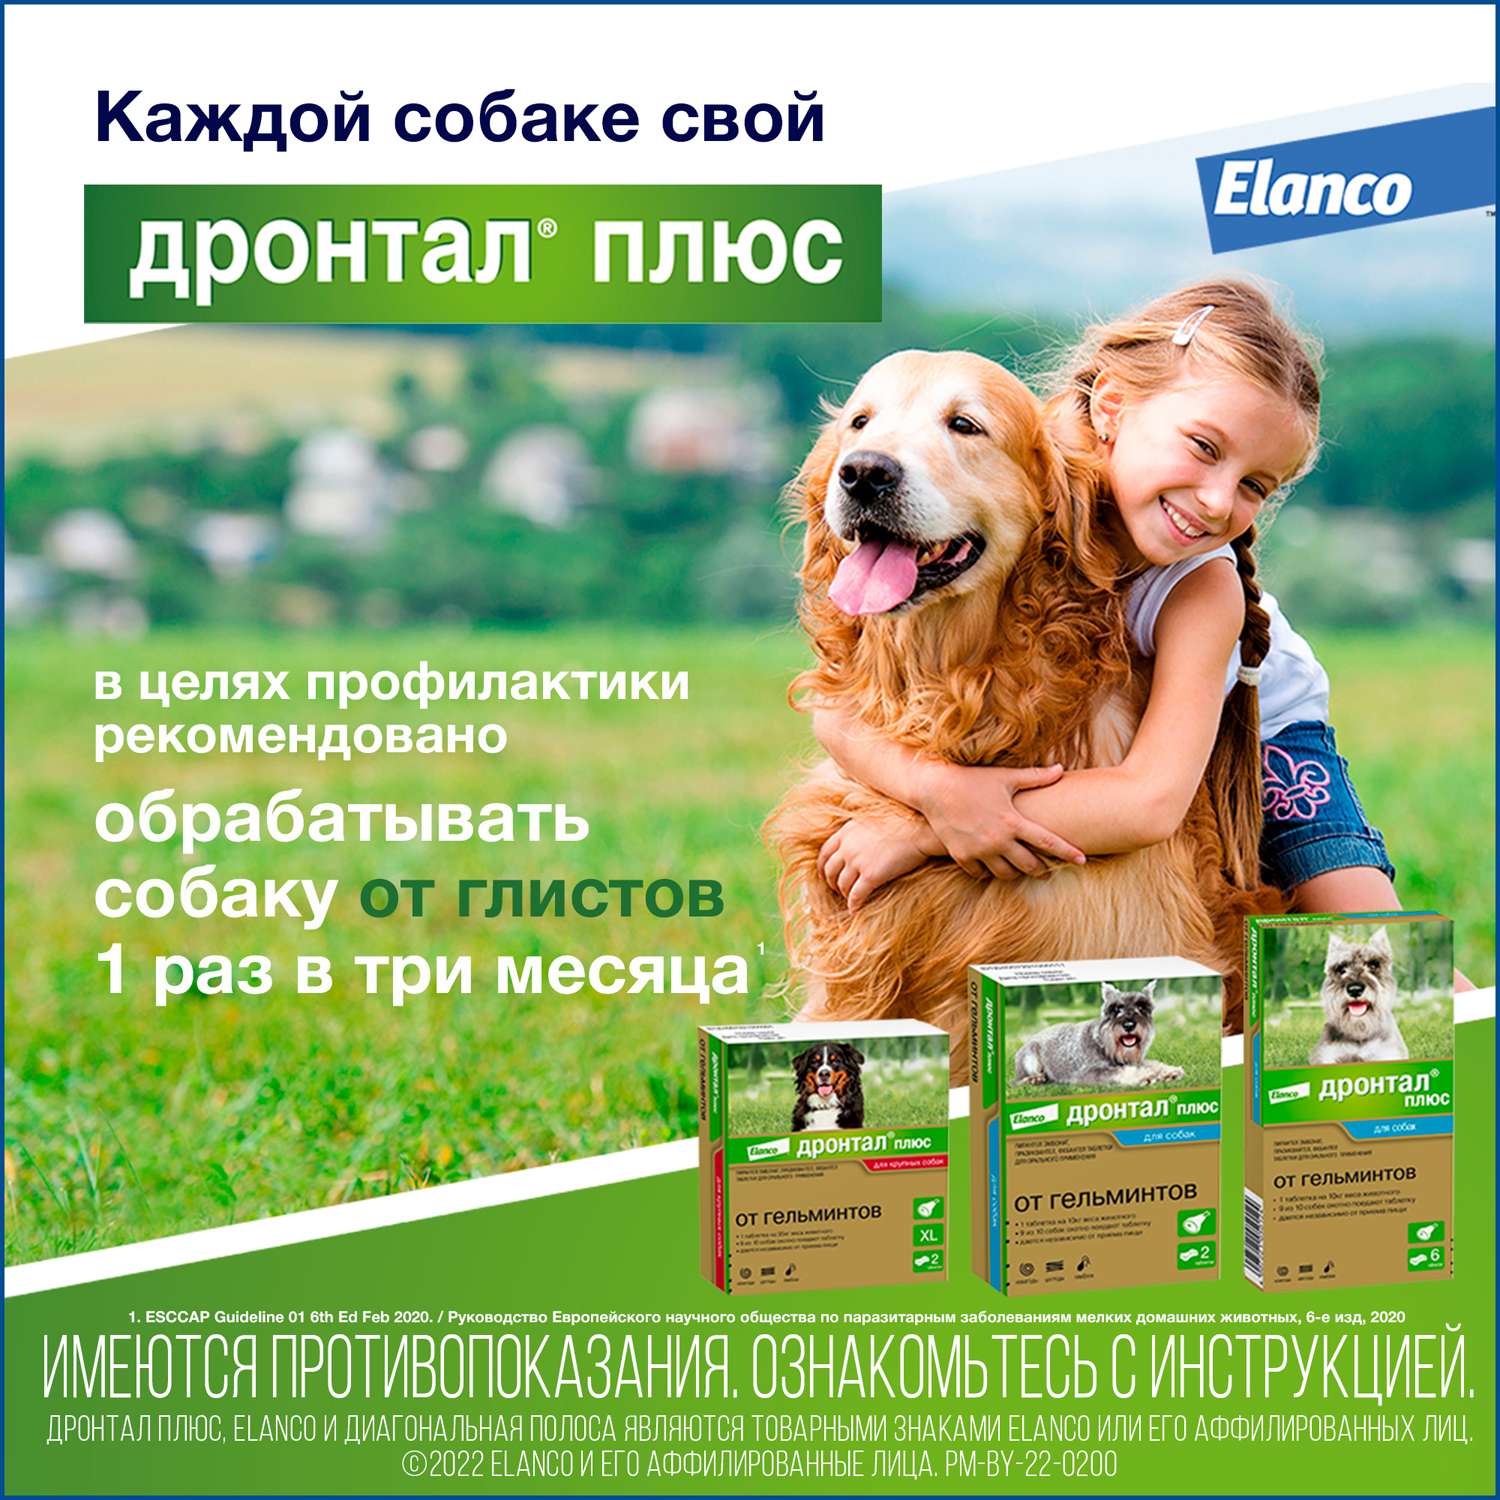 Таблетки для собак Elanco Дронтал плюс против глистов XL 2таблетки - фото 8